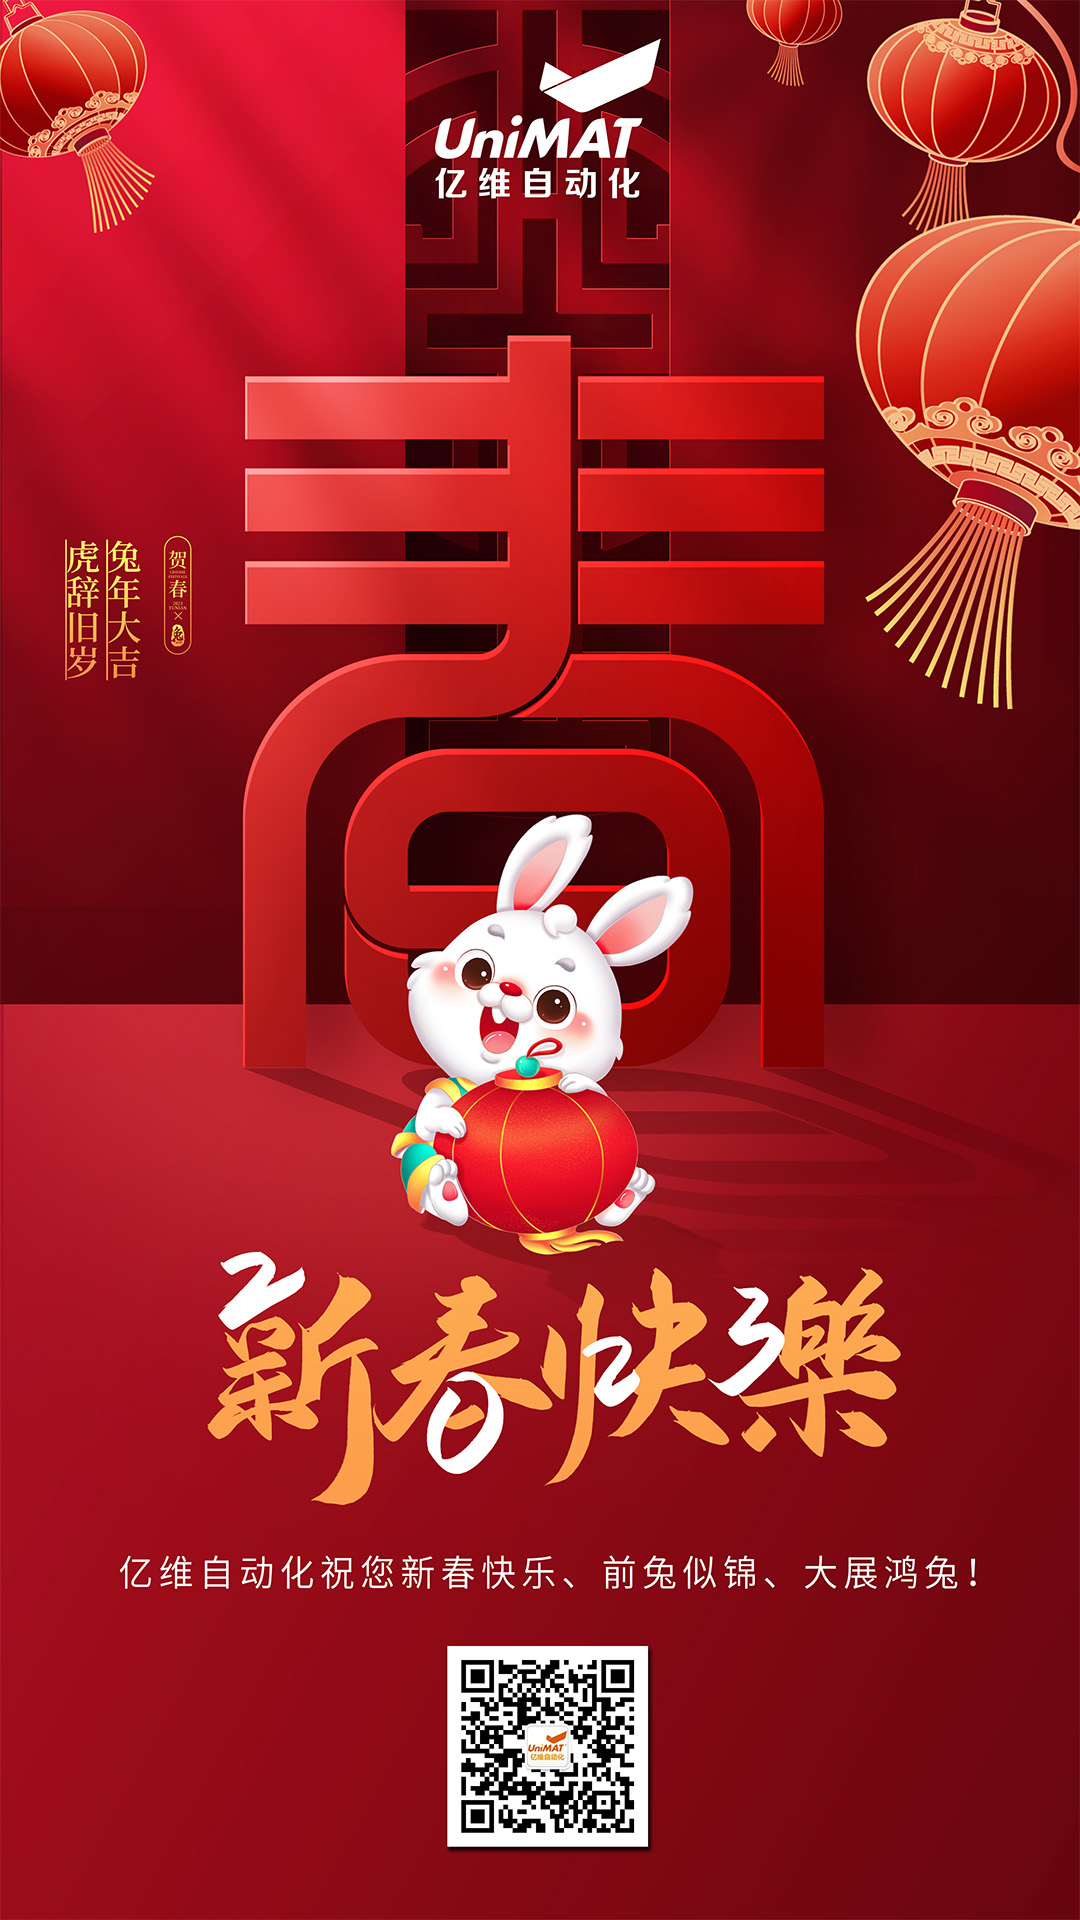 億維自動化祝您新春快樂、兔年大吉！